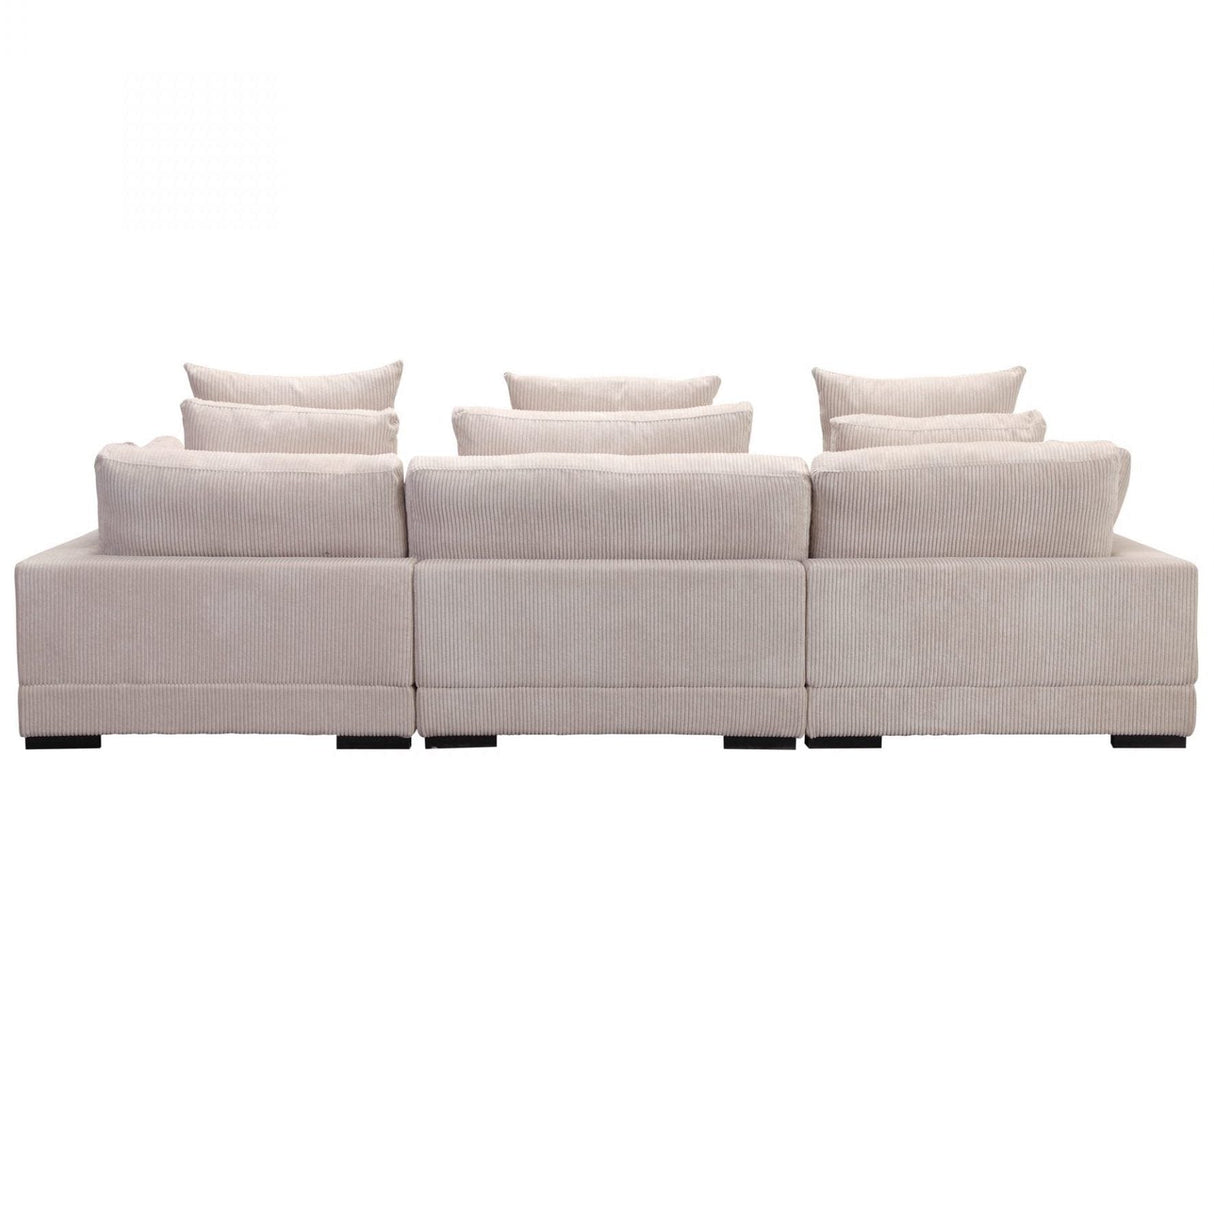 BLU Home Tumble Lounge Modular Sectional Furniture